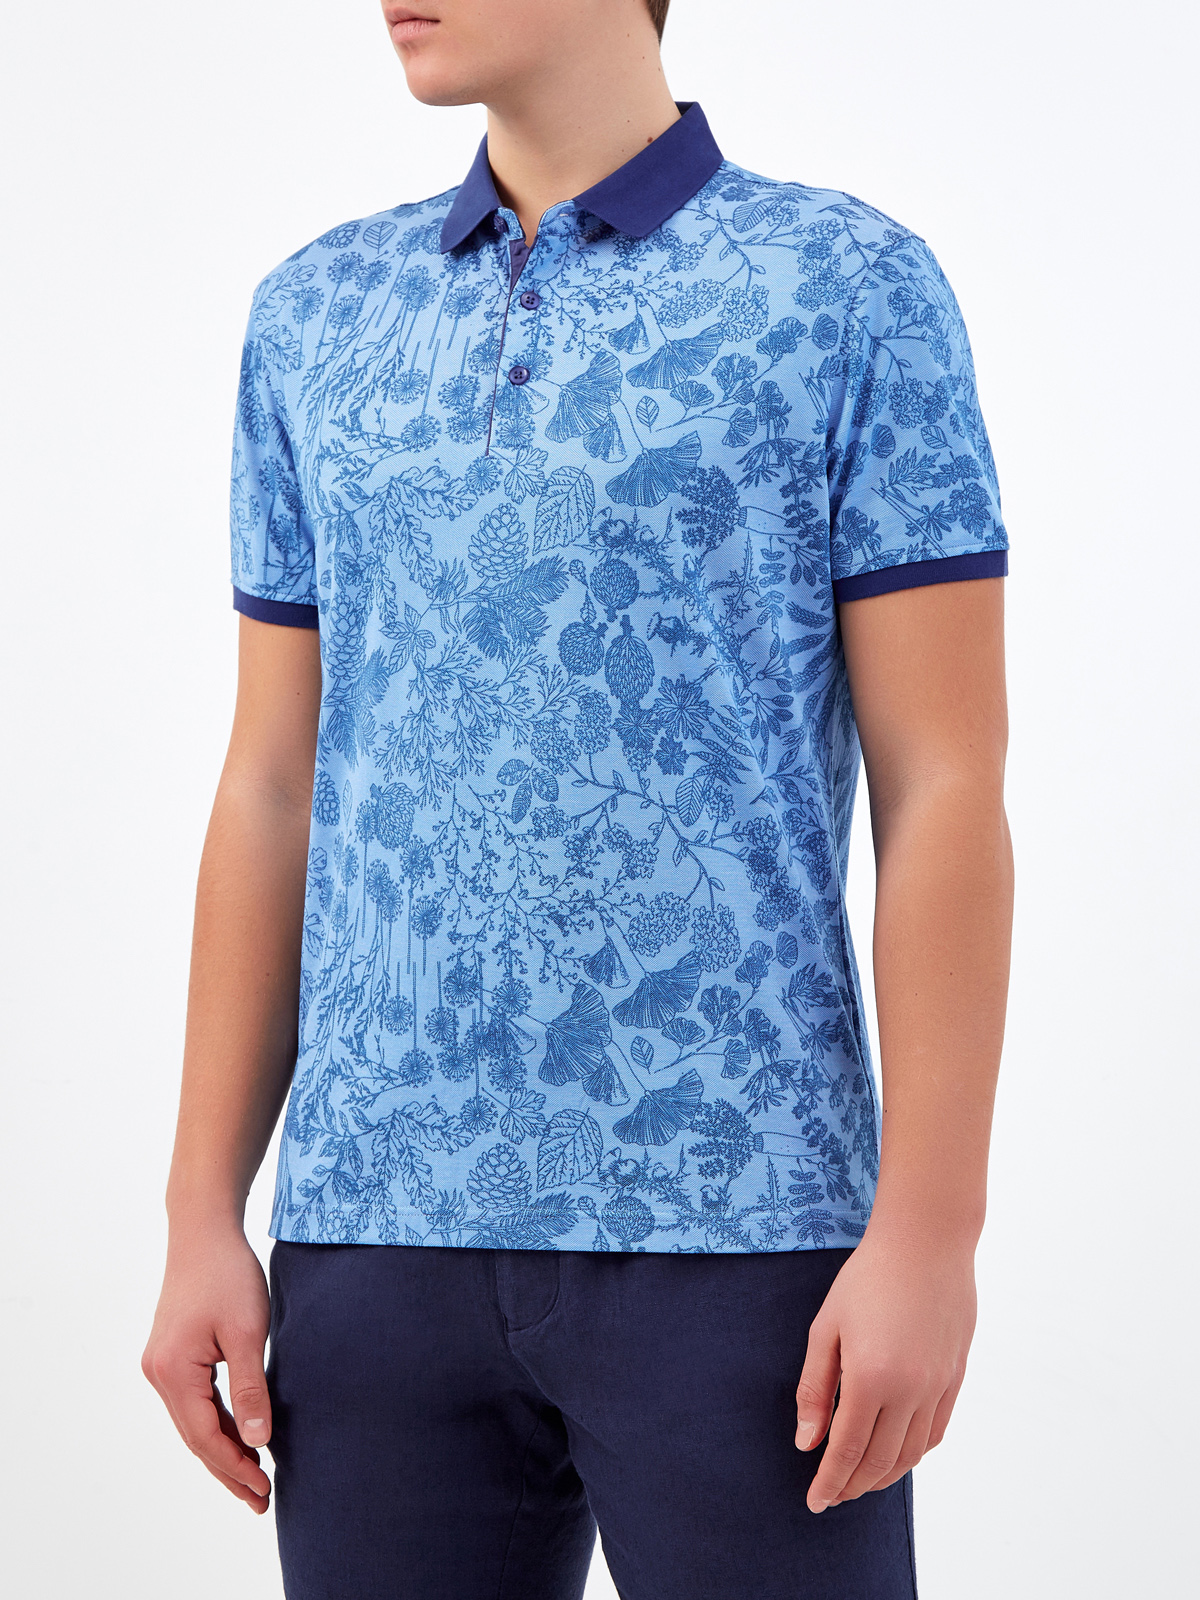 Хлопковая футболка-поло с набивным принтом CUDGI, цвет синий, размер 50;52;54;56;48 - фото 3